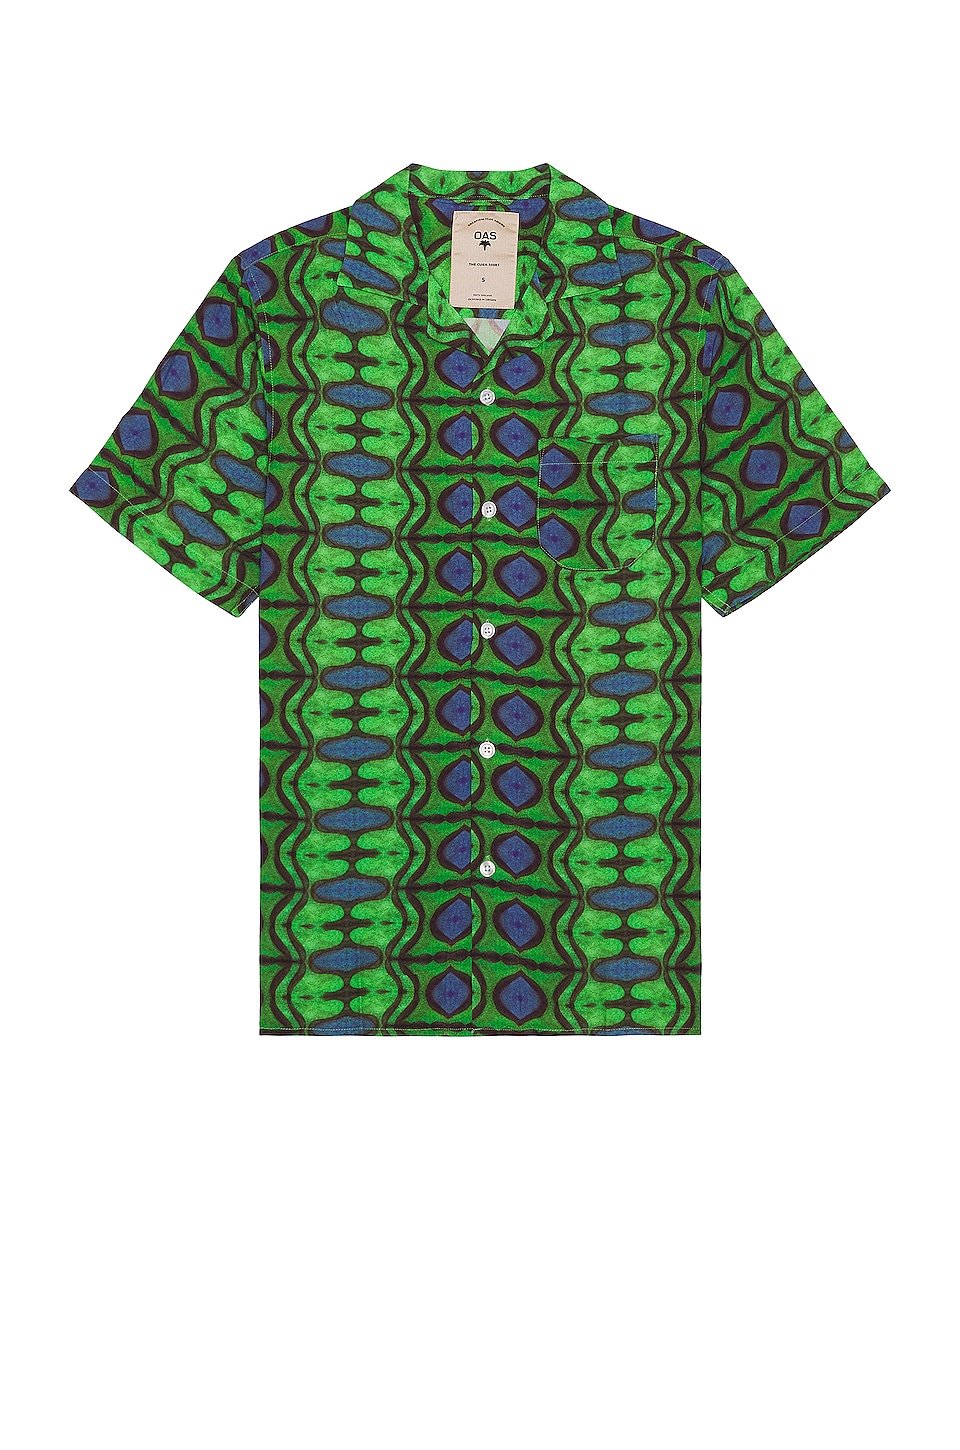 Men's Short Sleeve Hawaiian Shirt in Optic Banana Leaf